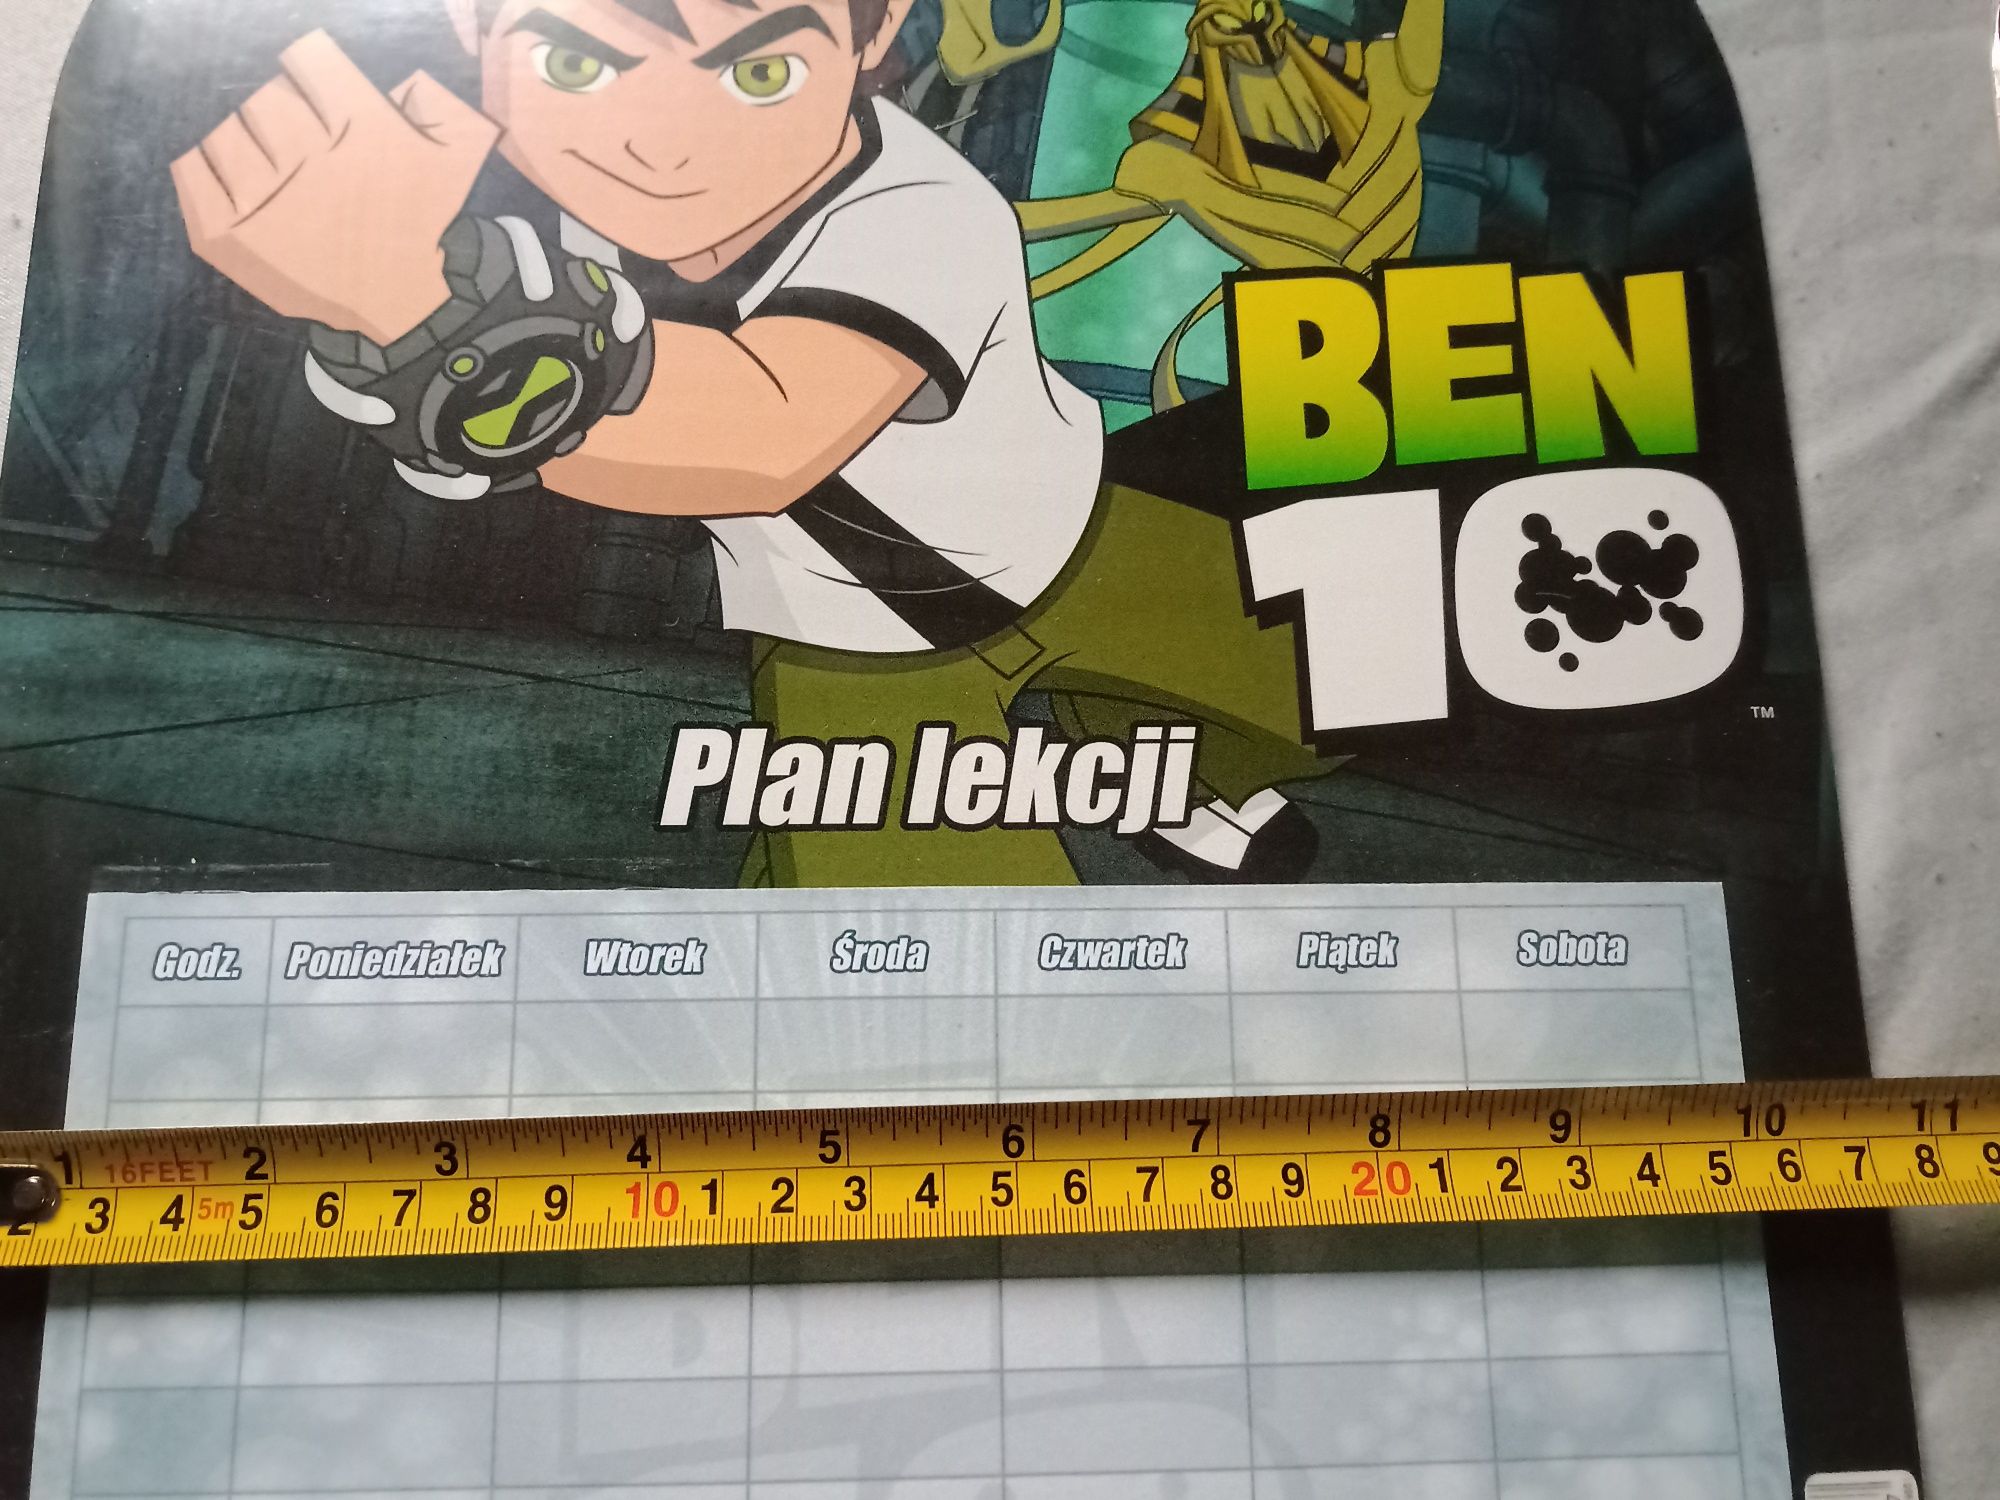 Ben 10 plan lekcji